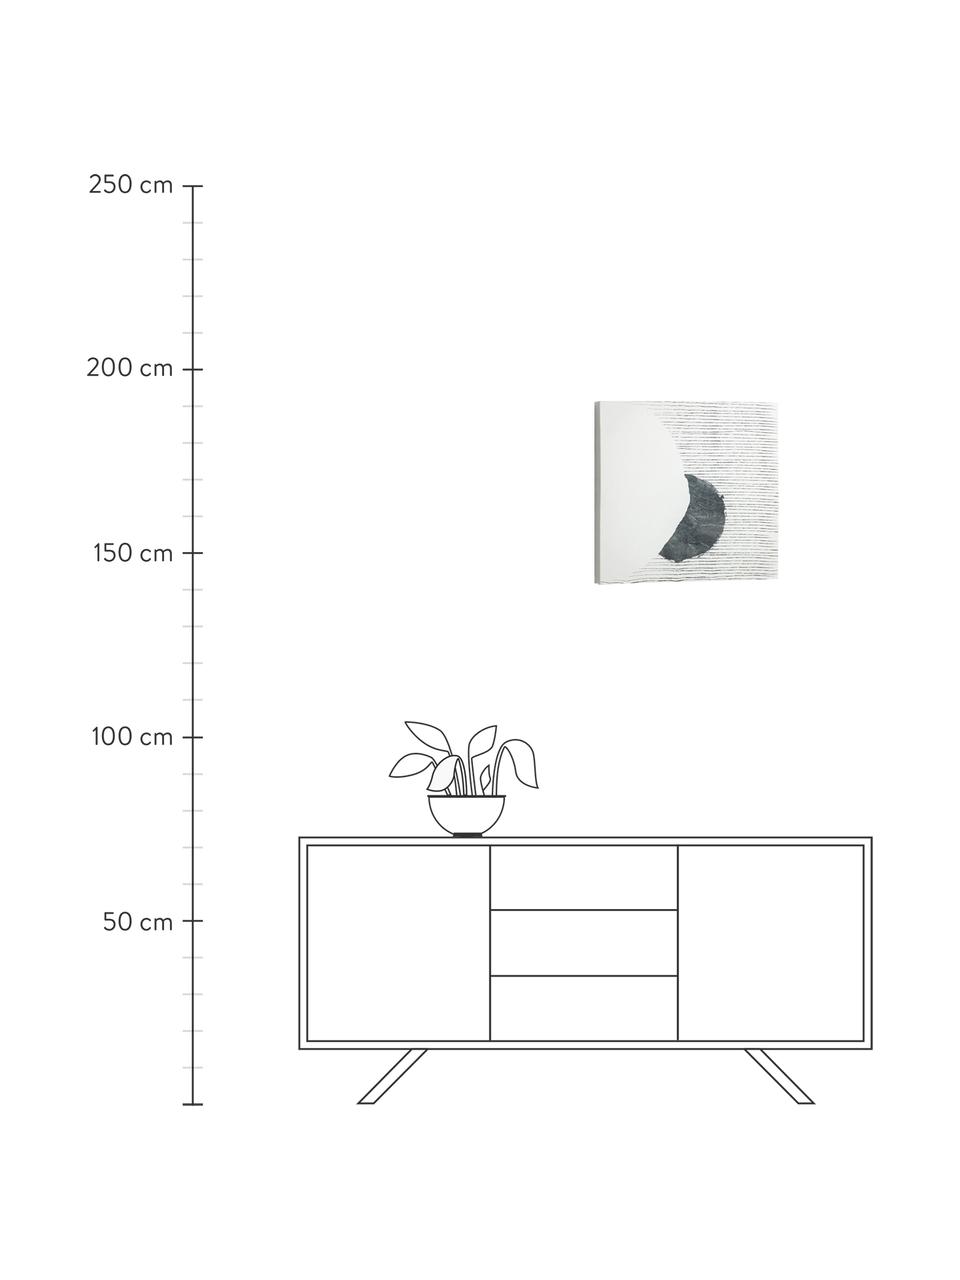 Tištěný obraz na plátně Prisma, Bílá, černá, Š 50 cm, V 50 cm